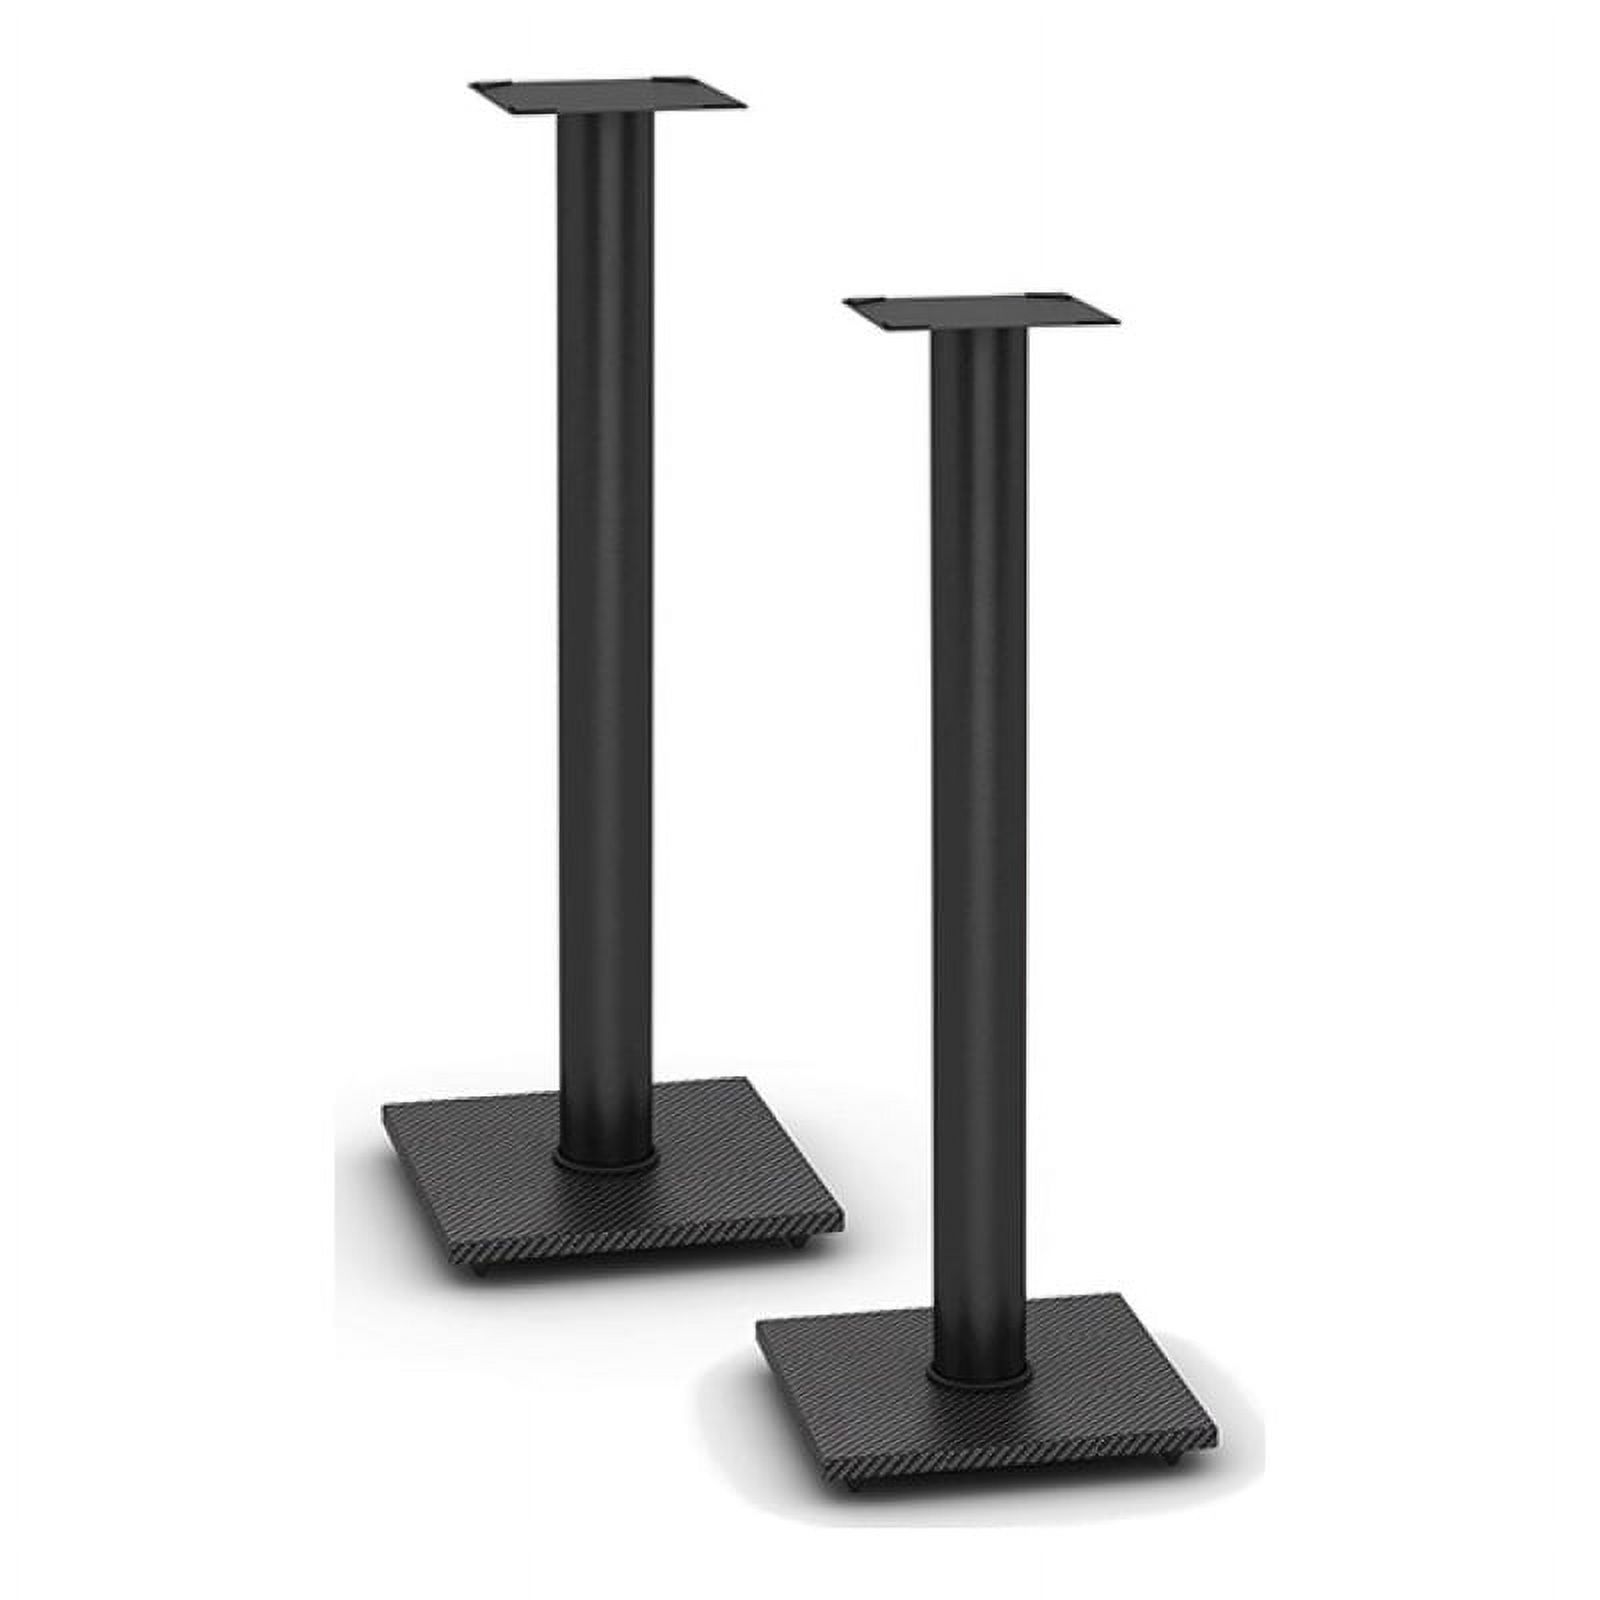 Atlantic Speaker Pedestal Stands, 10.5"W x 10.5"D x 30" H, Set of 2, Carbon Fiber Black - image 2 of 8